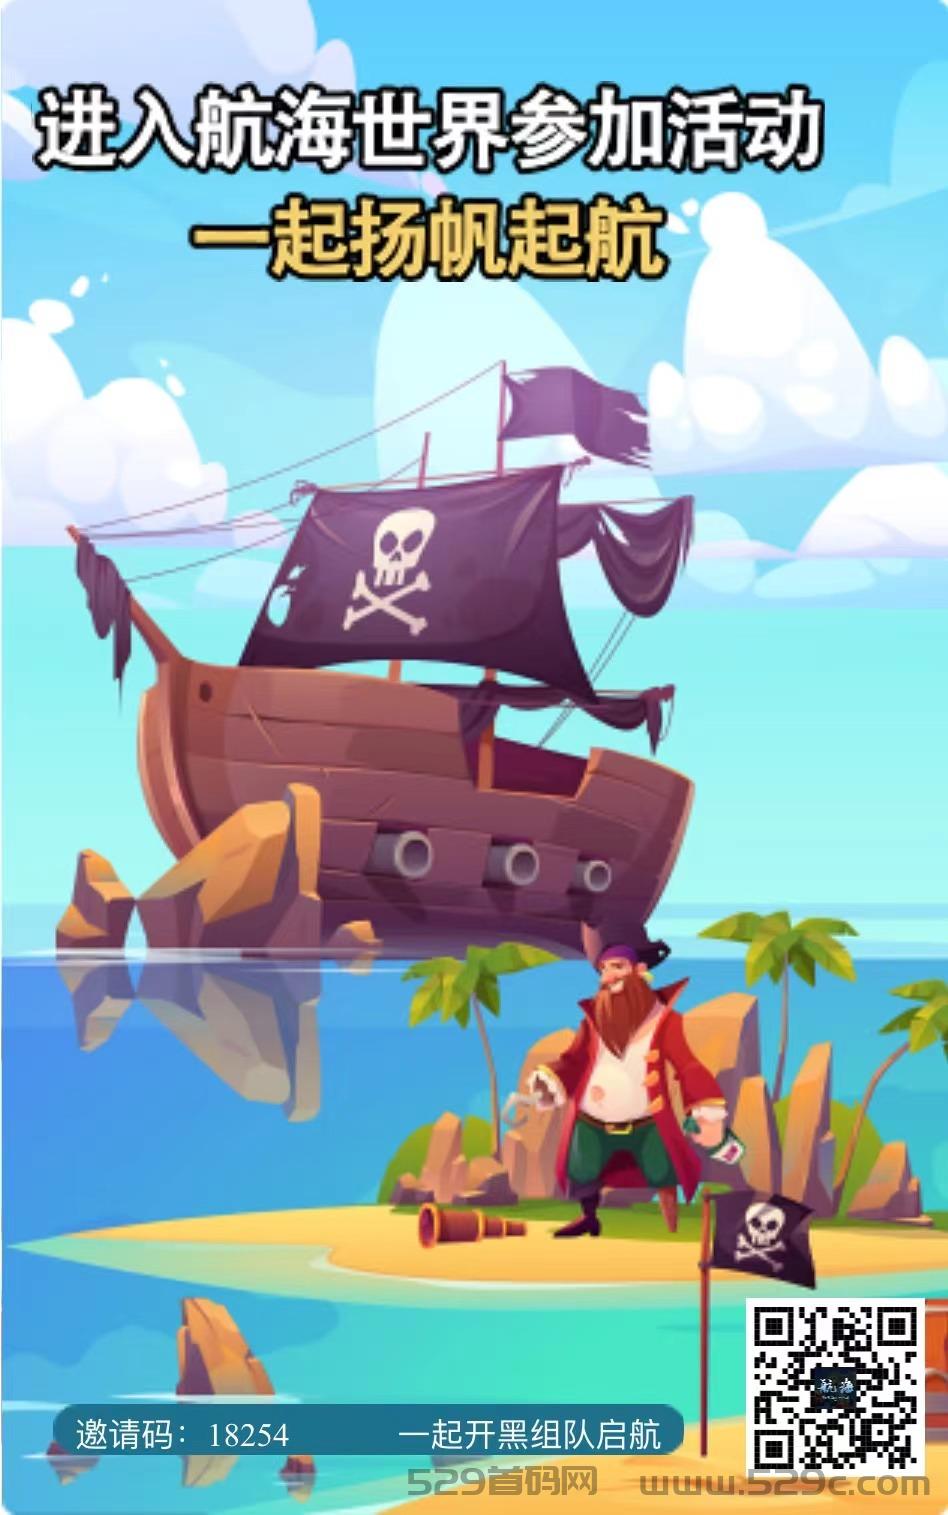 《航海世界》——涌现全新潮流游戏！公司实力强大，上架苹果商店